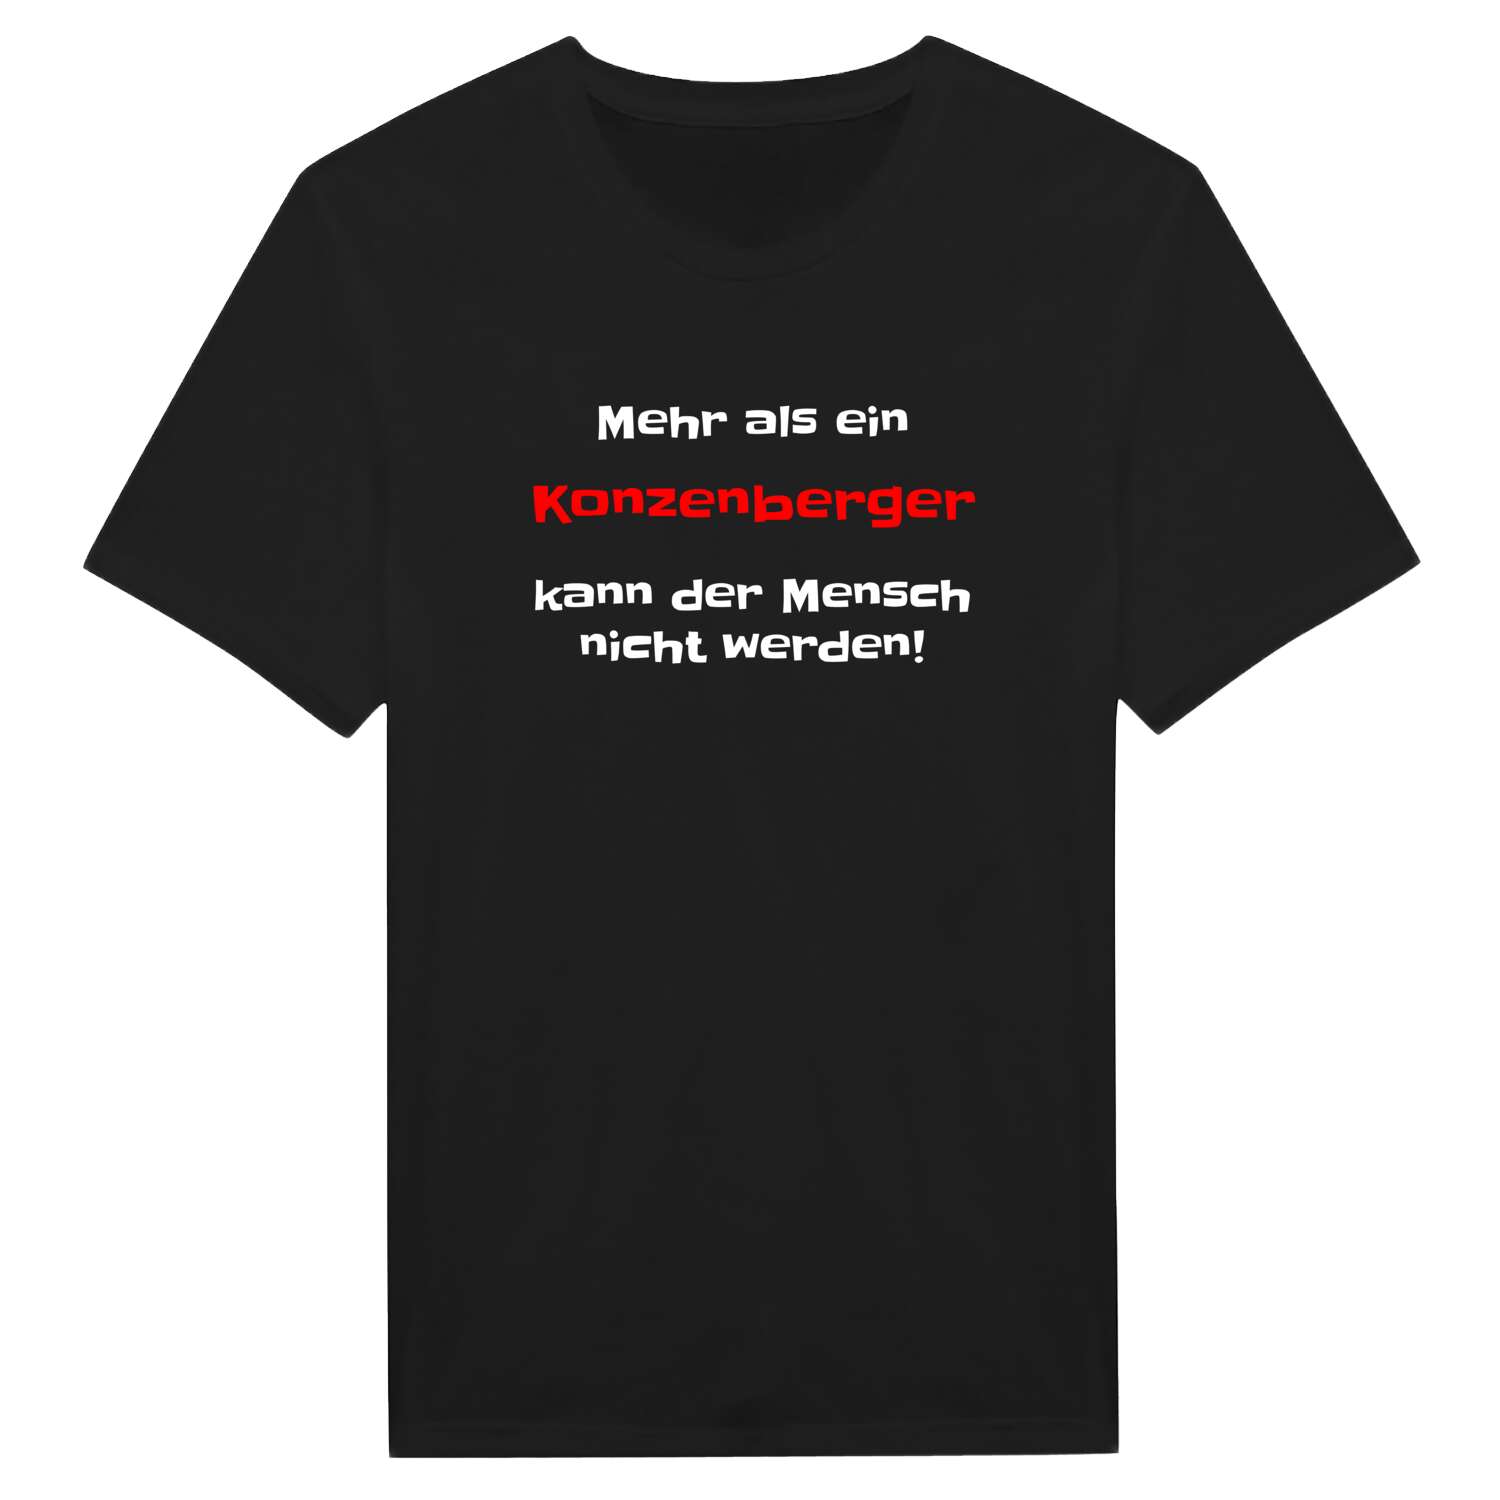 Konzenberg T-Shirt »Mehr als ein«